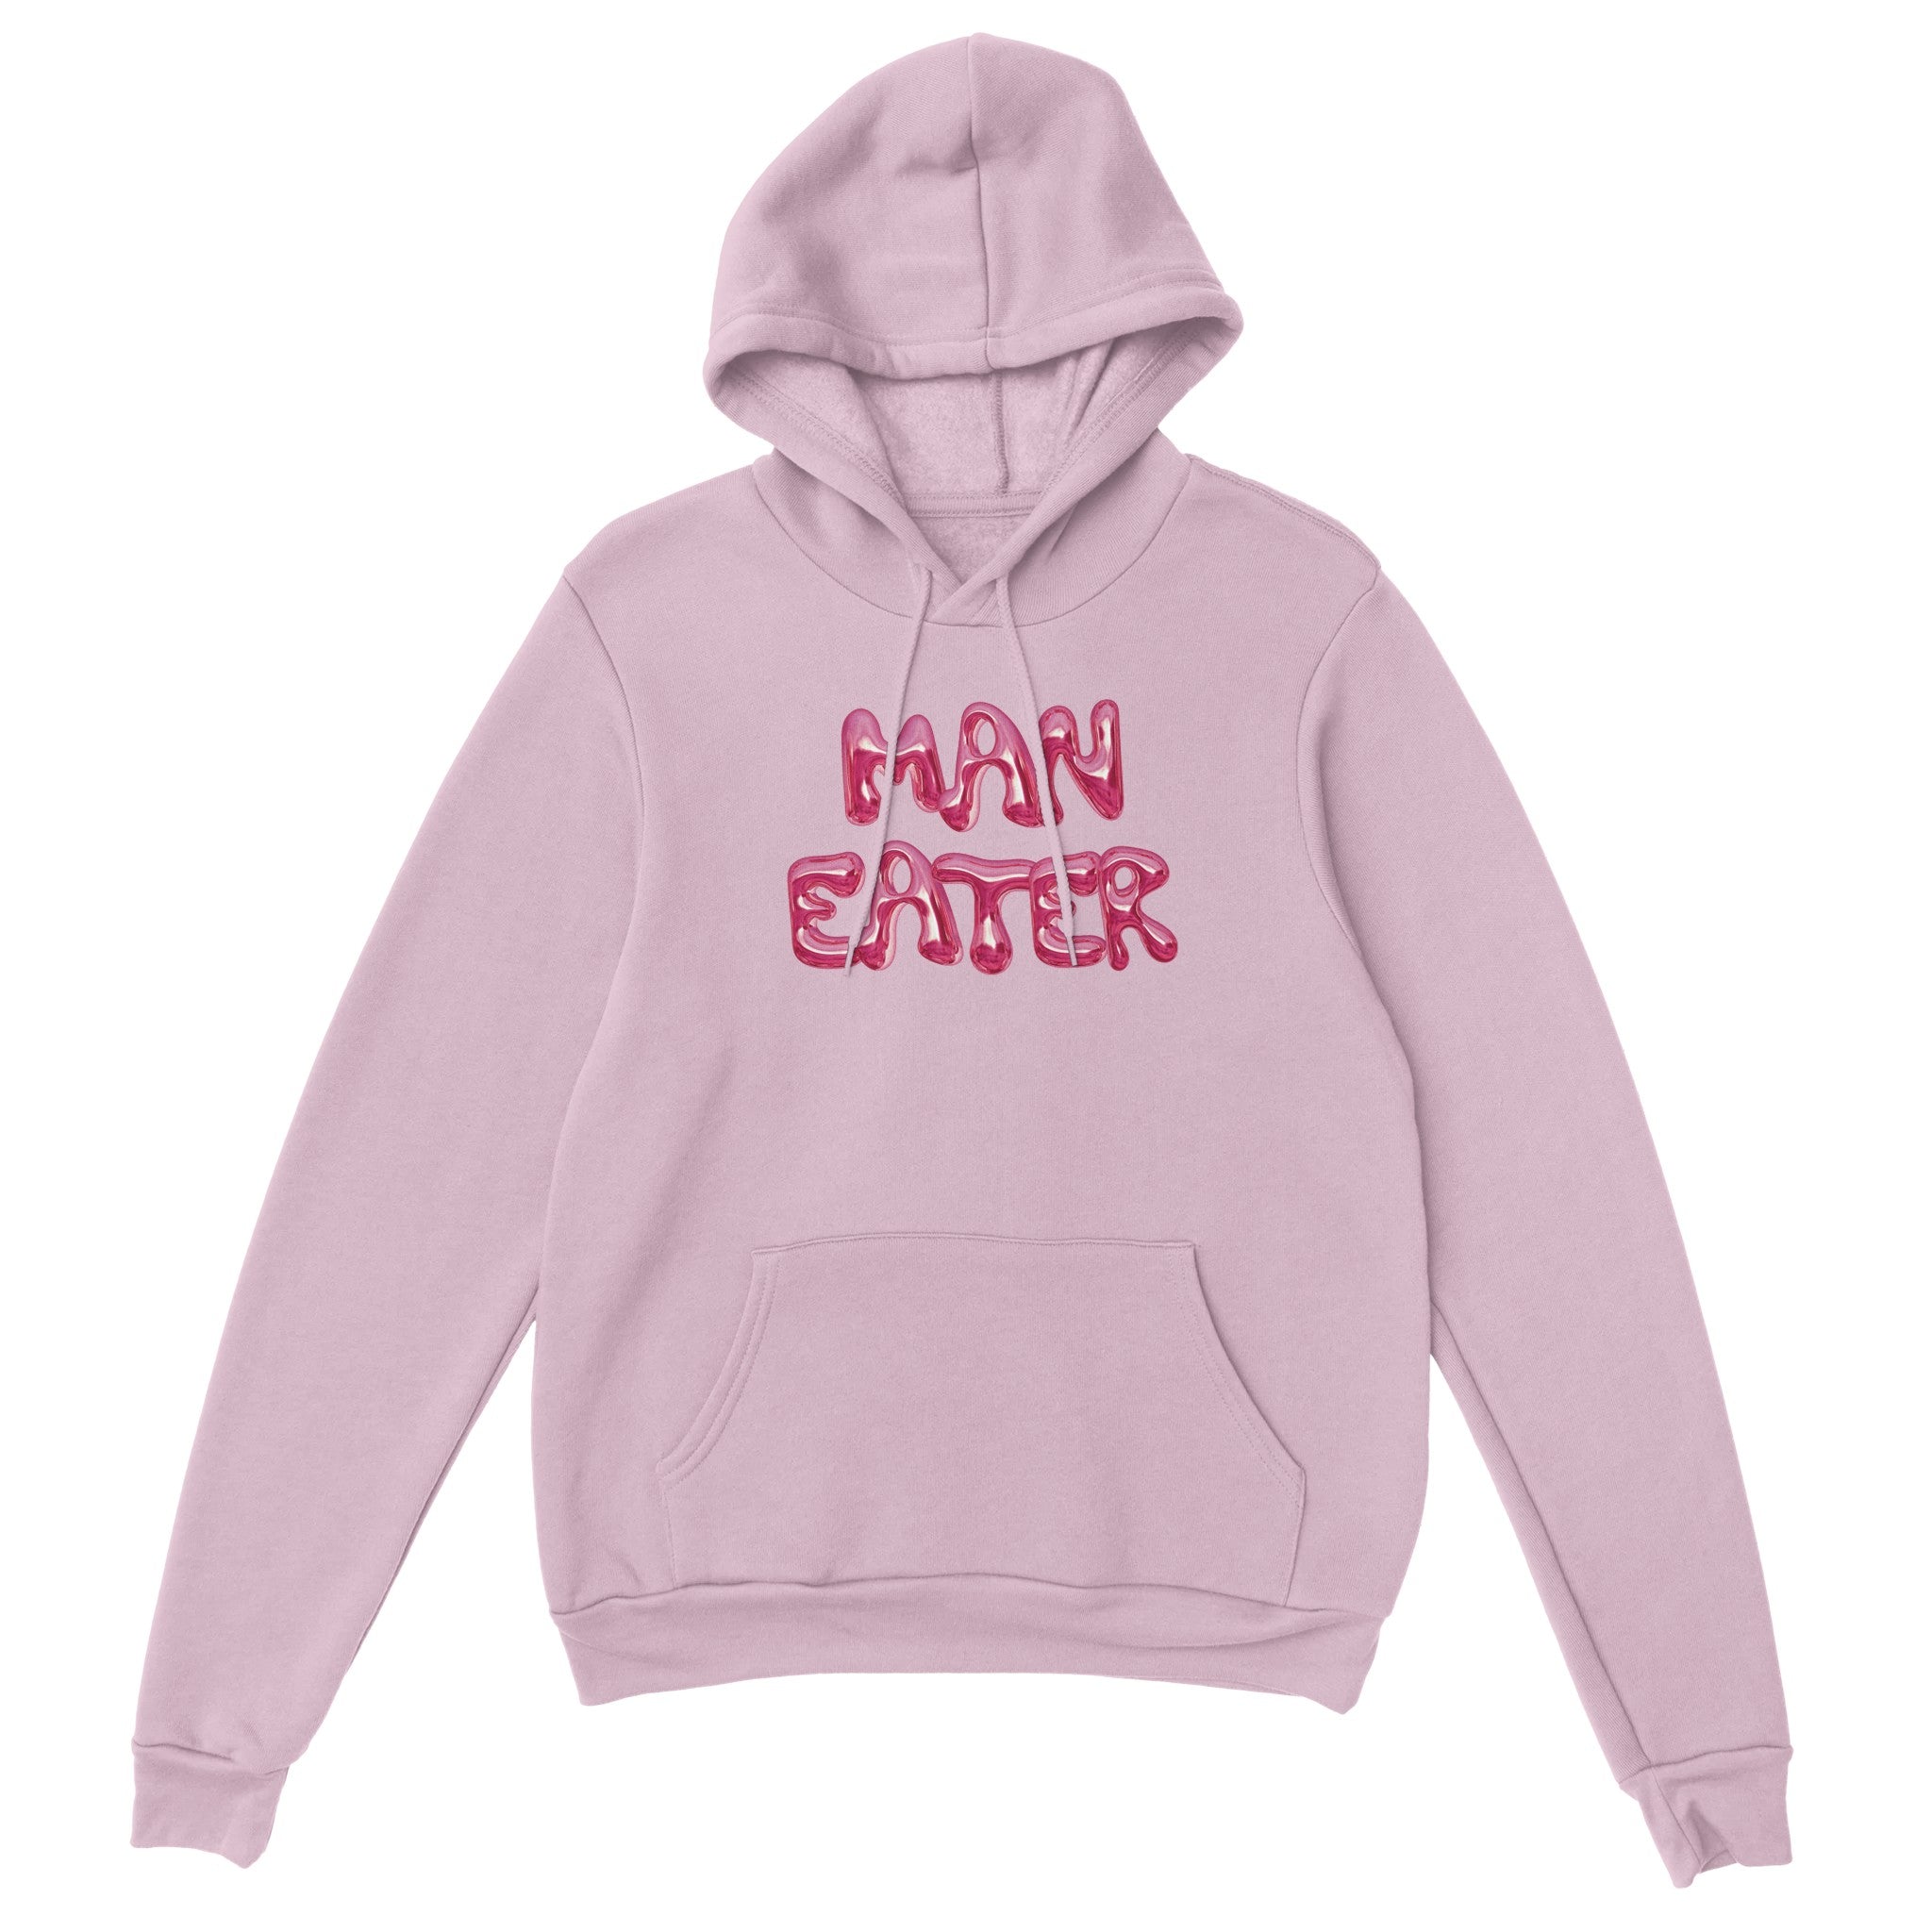 'Man Eater' hoodie - In Print We Trust